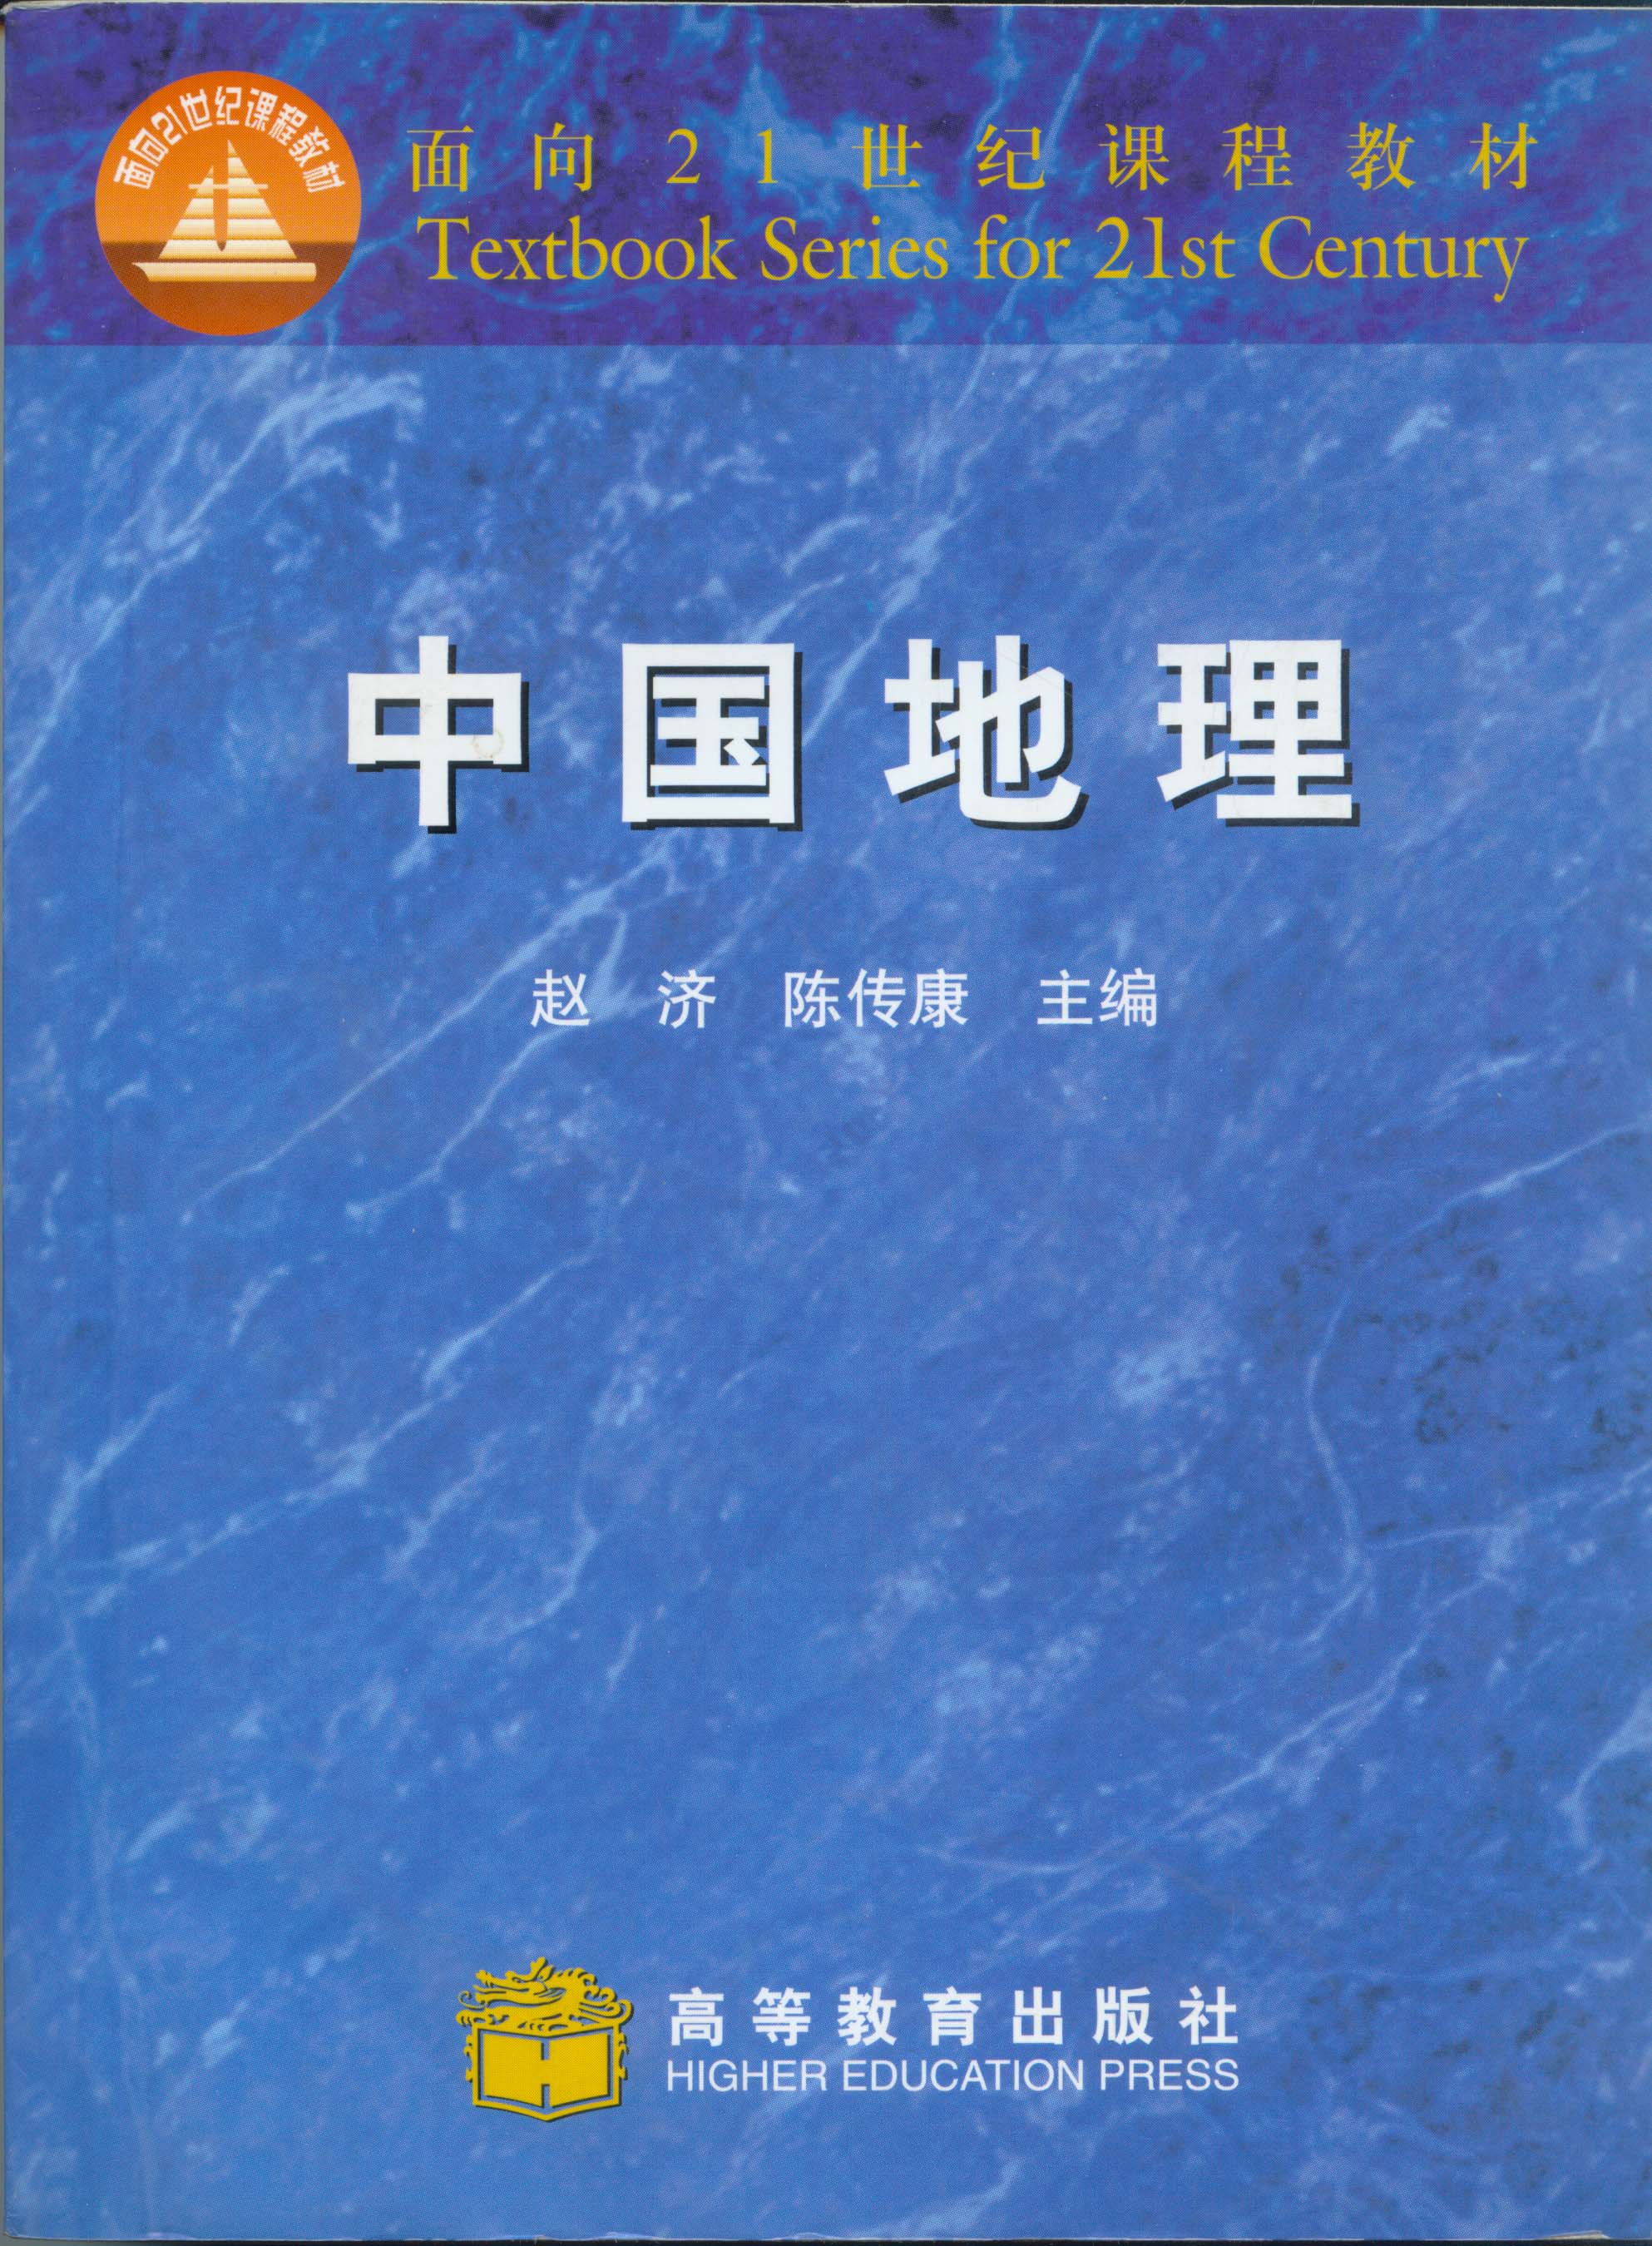 赵济,陈传康主编中国地理[m]高等教育出版社,1999